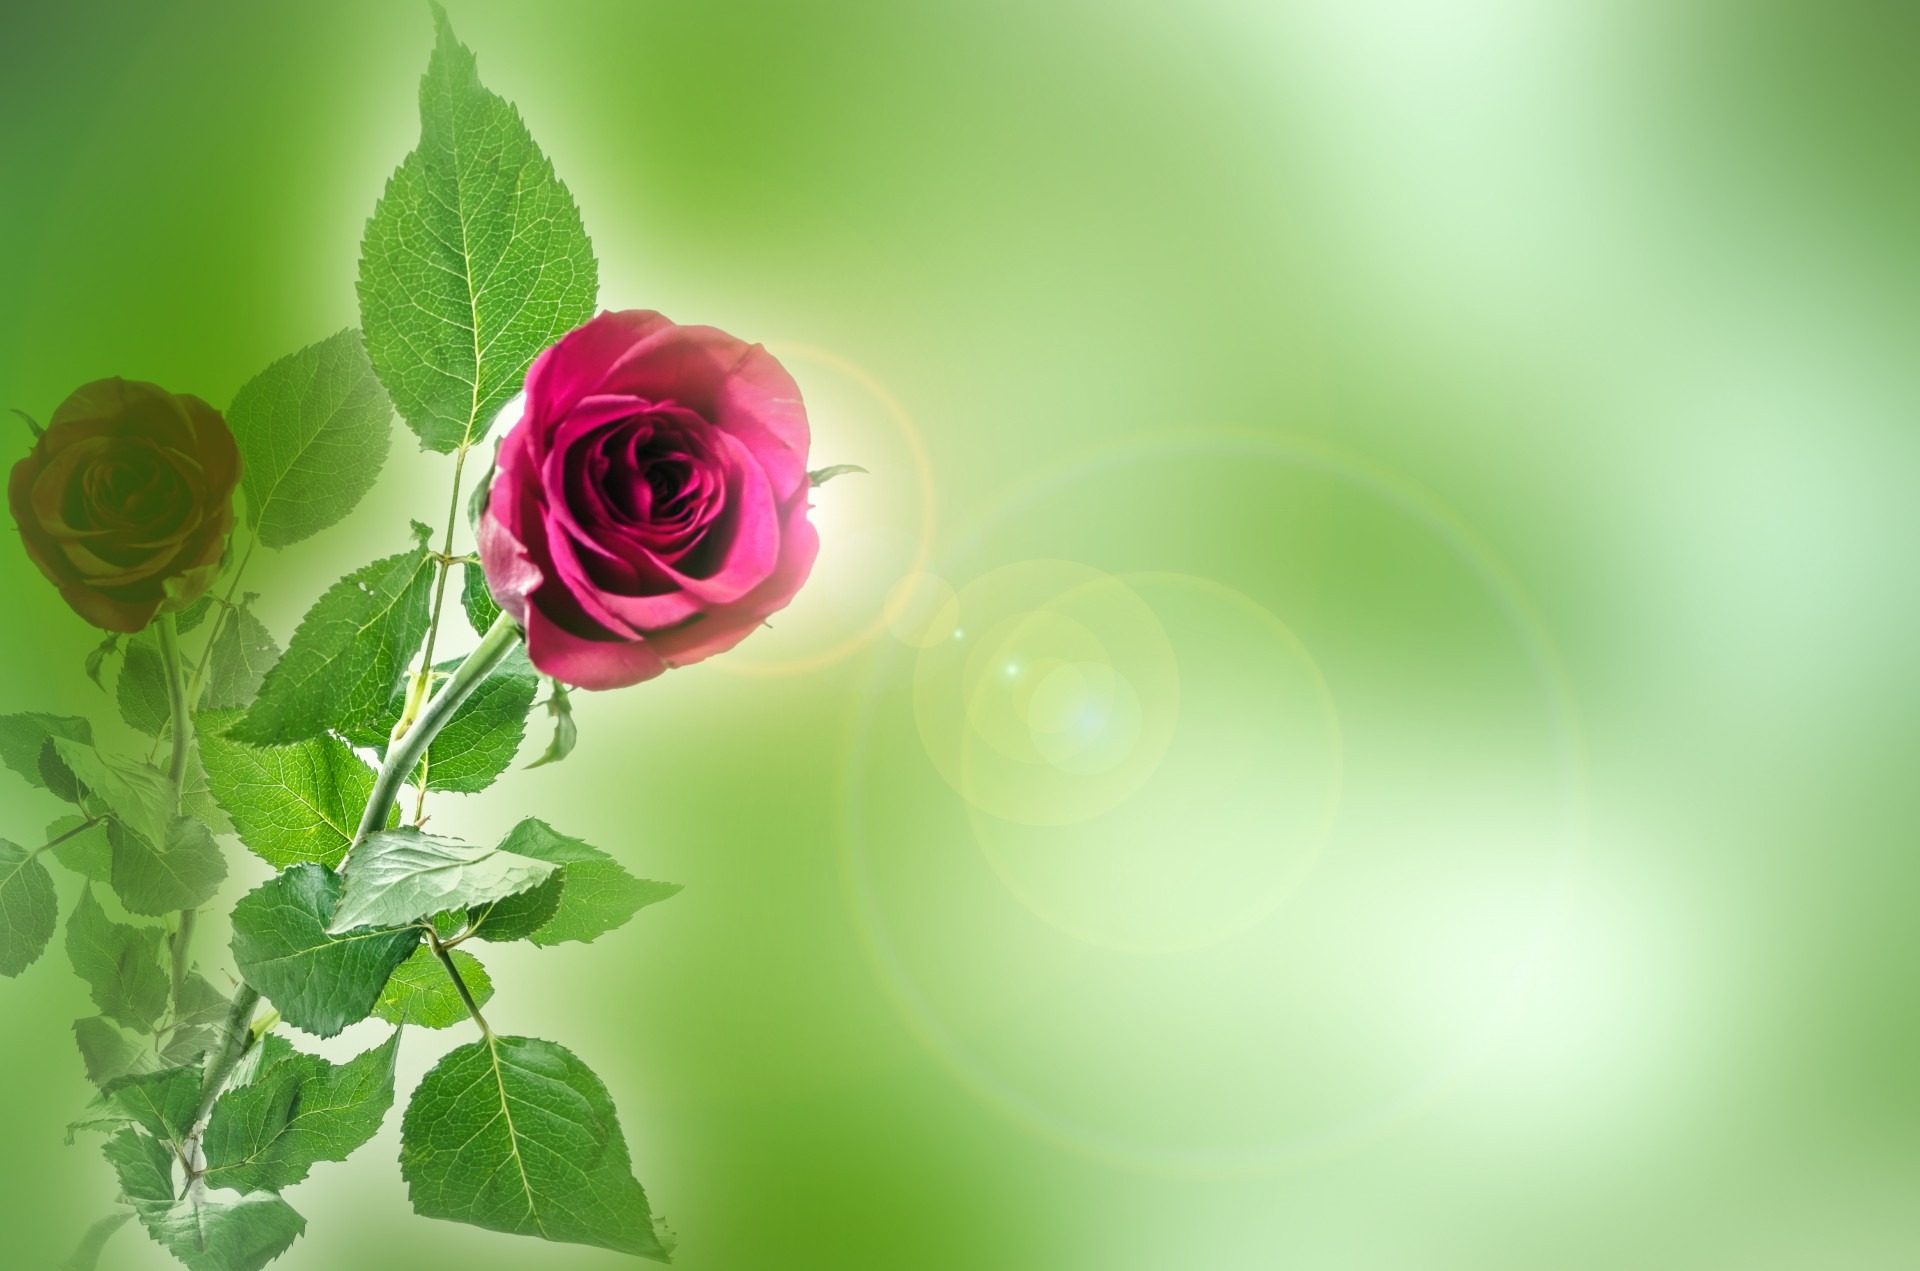 Фото бесплатно одинокая роза, цветочная композиция, розовый цветок